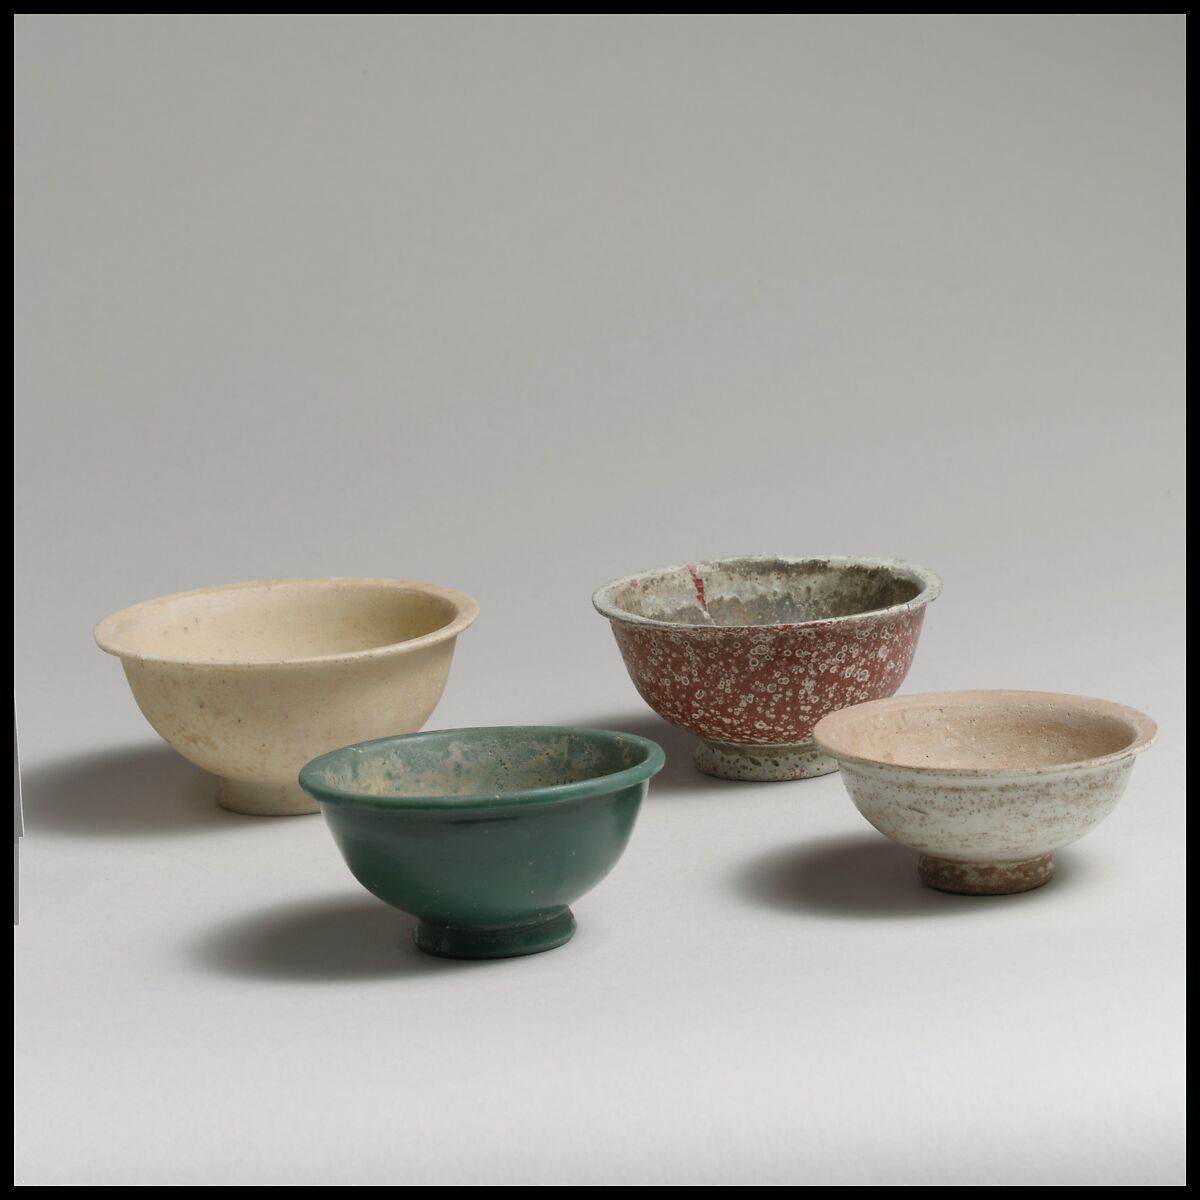 Four monochrome bowls